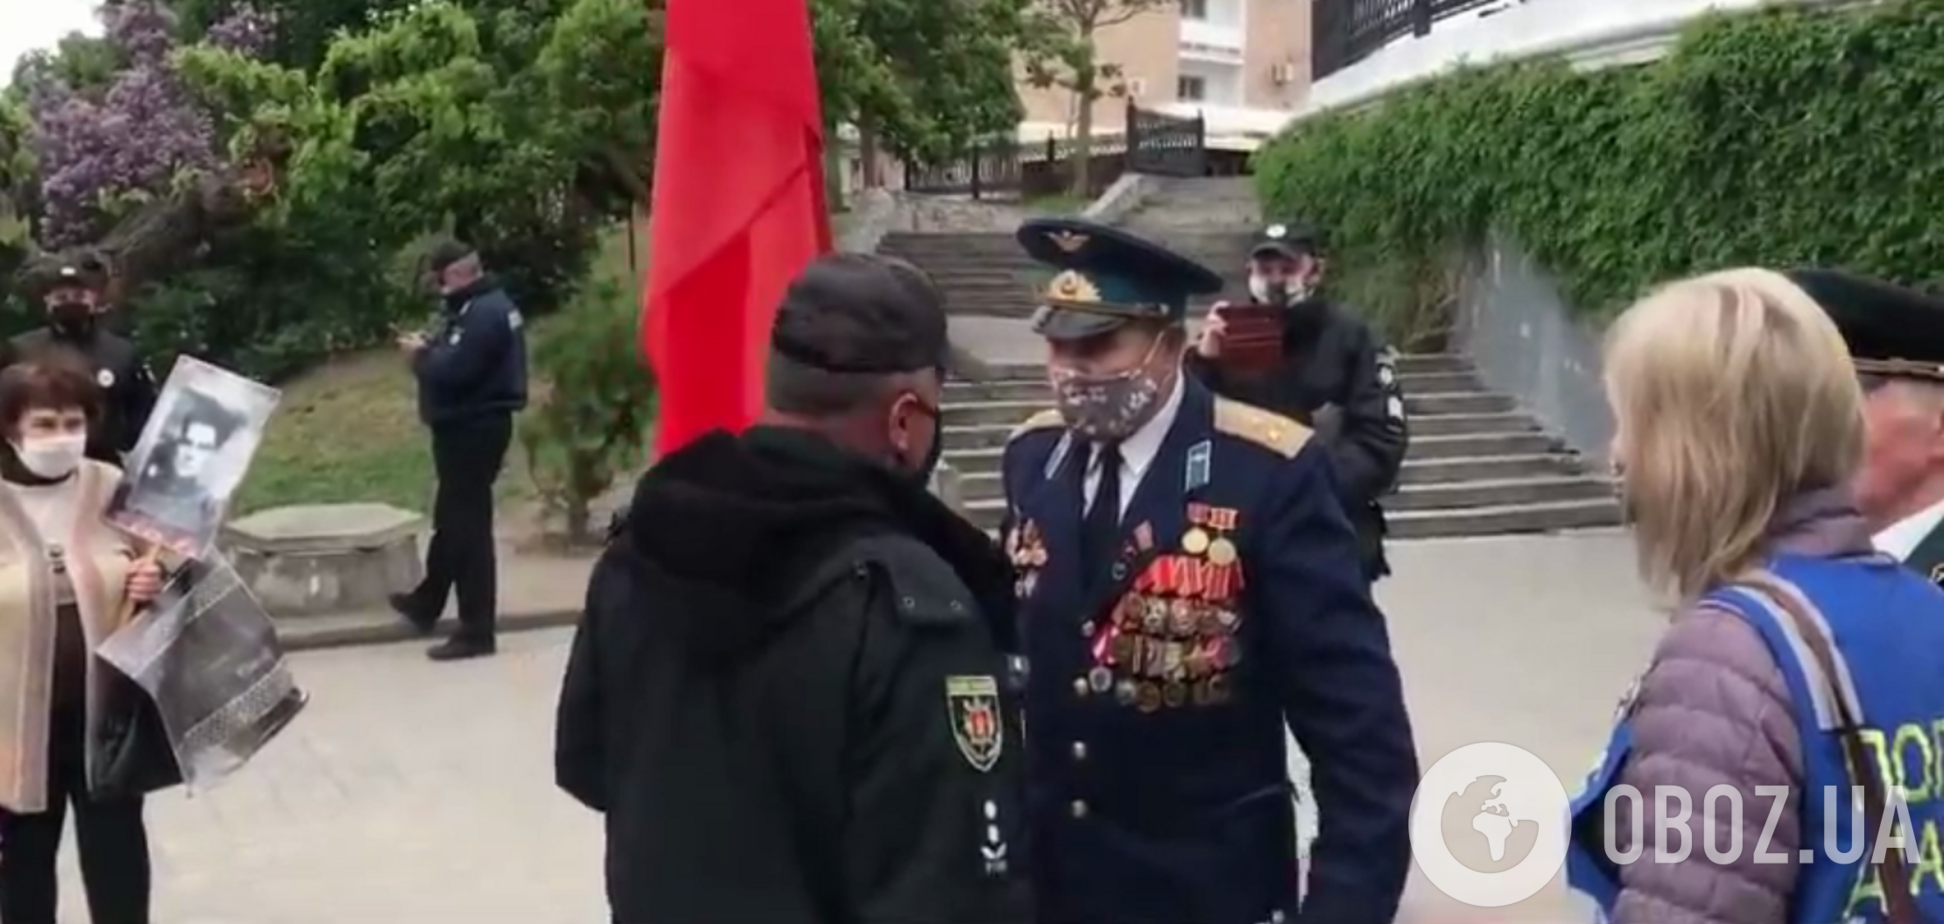 'Украины нет, есть колония!' На Запорожье пенсионер устроил скандал из-за 9 мая. Видео 18+